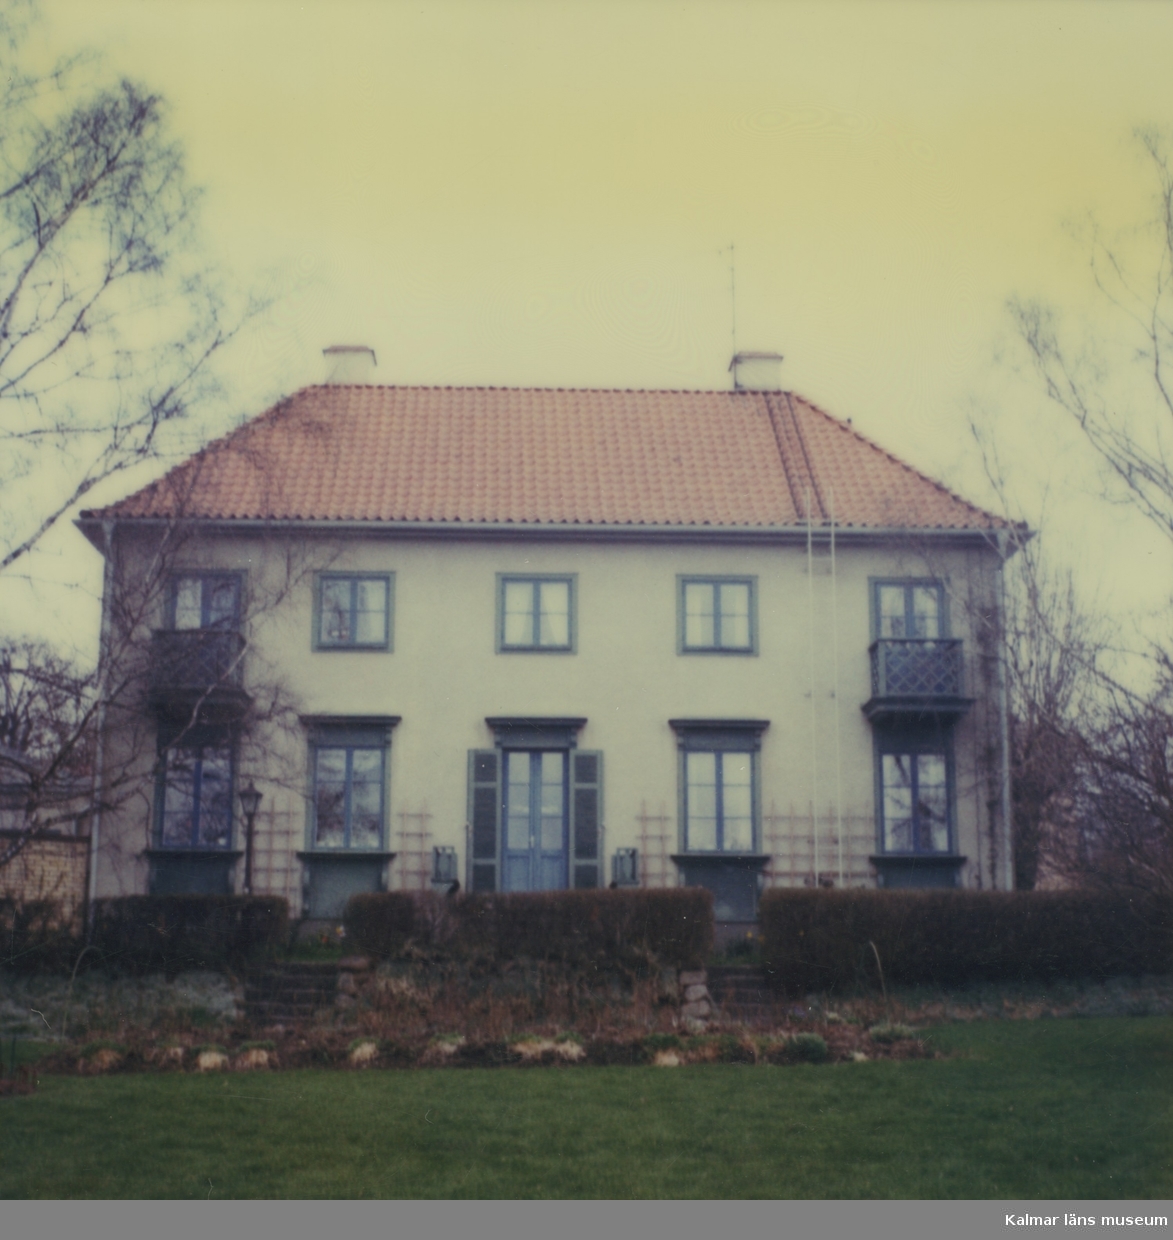 Villan heter Kettorp. Befinner sig i Vimmerby ritad av Ragnar Östberg.
Fasaden mot gården.